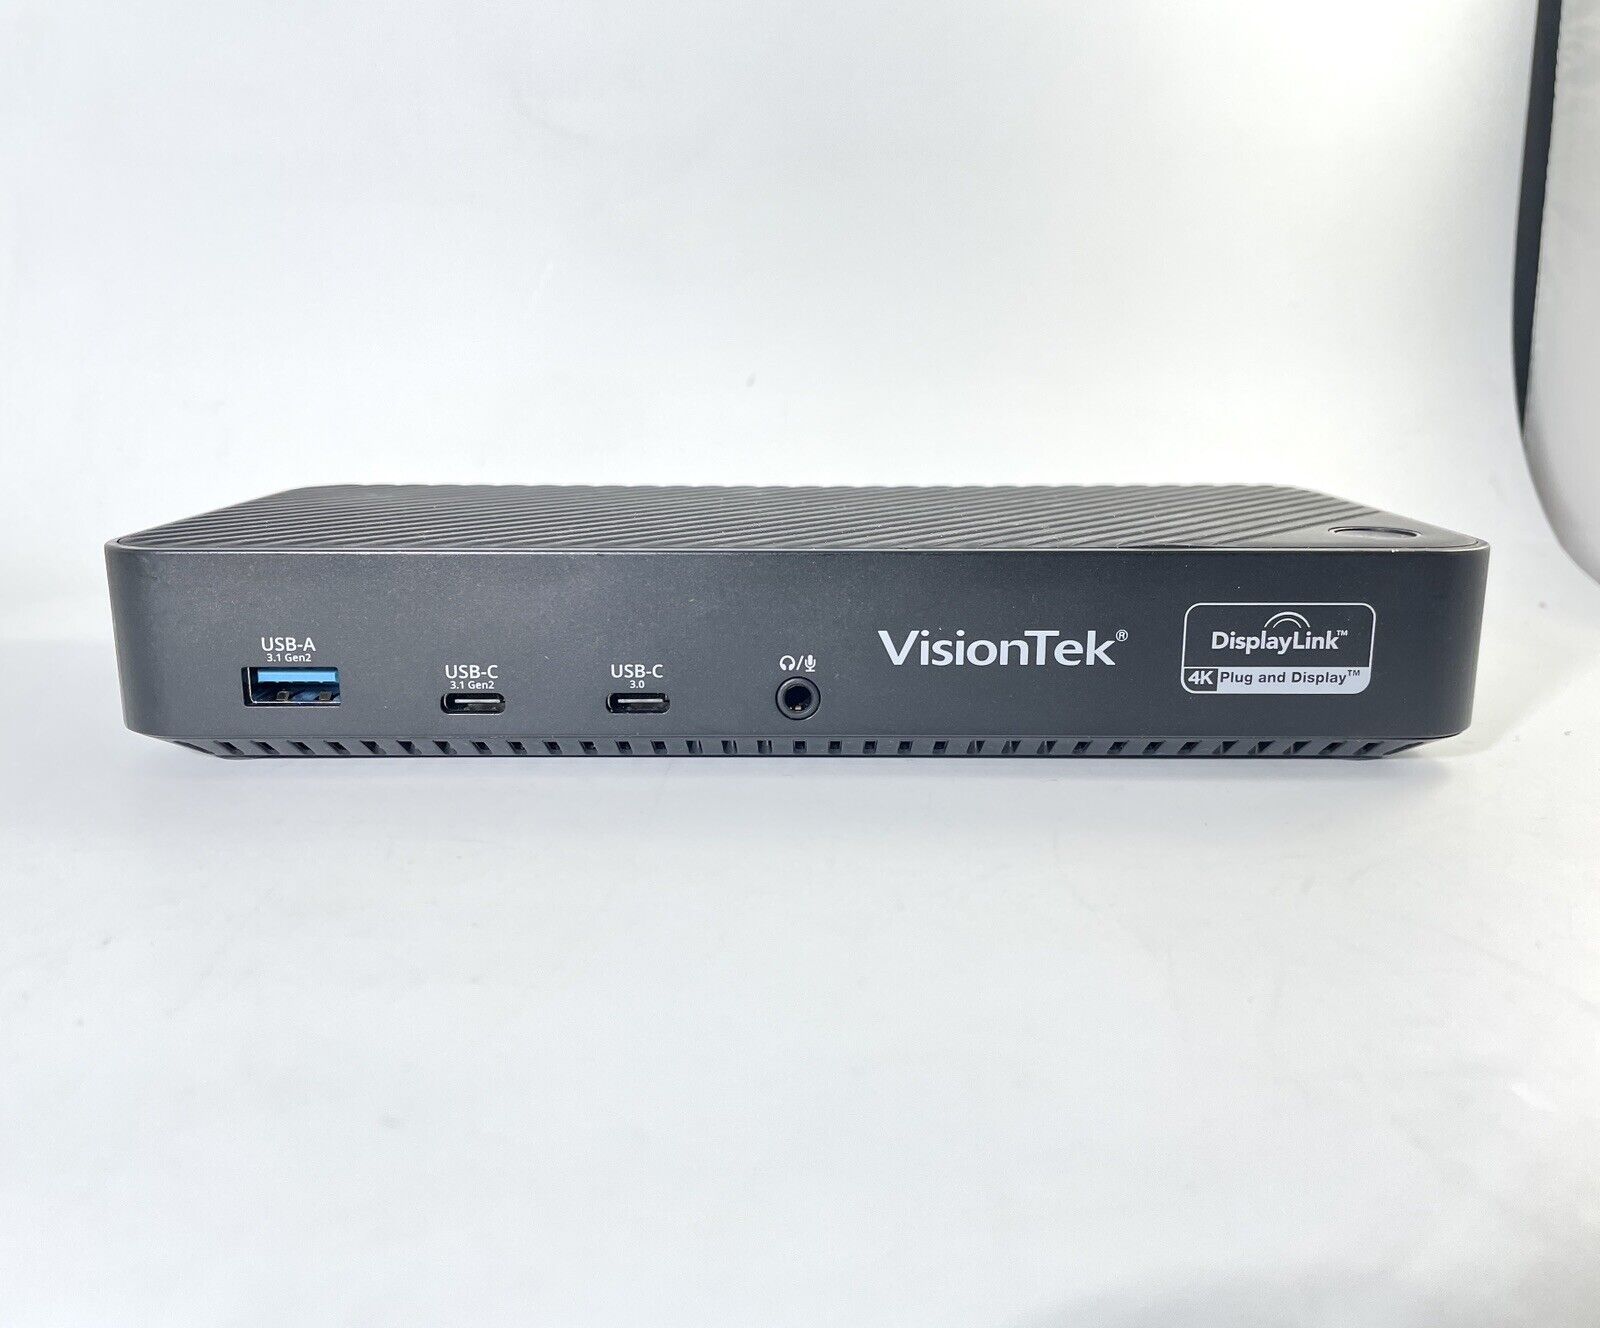 VisionTek VT7000 Triple Display 4K USB 3.0 USB-C Docking Station  - WITH ADAPTER